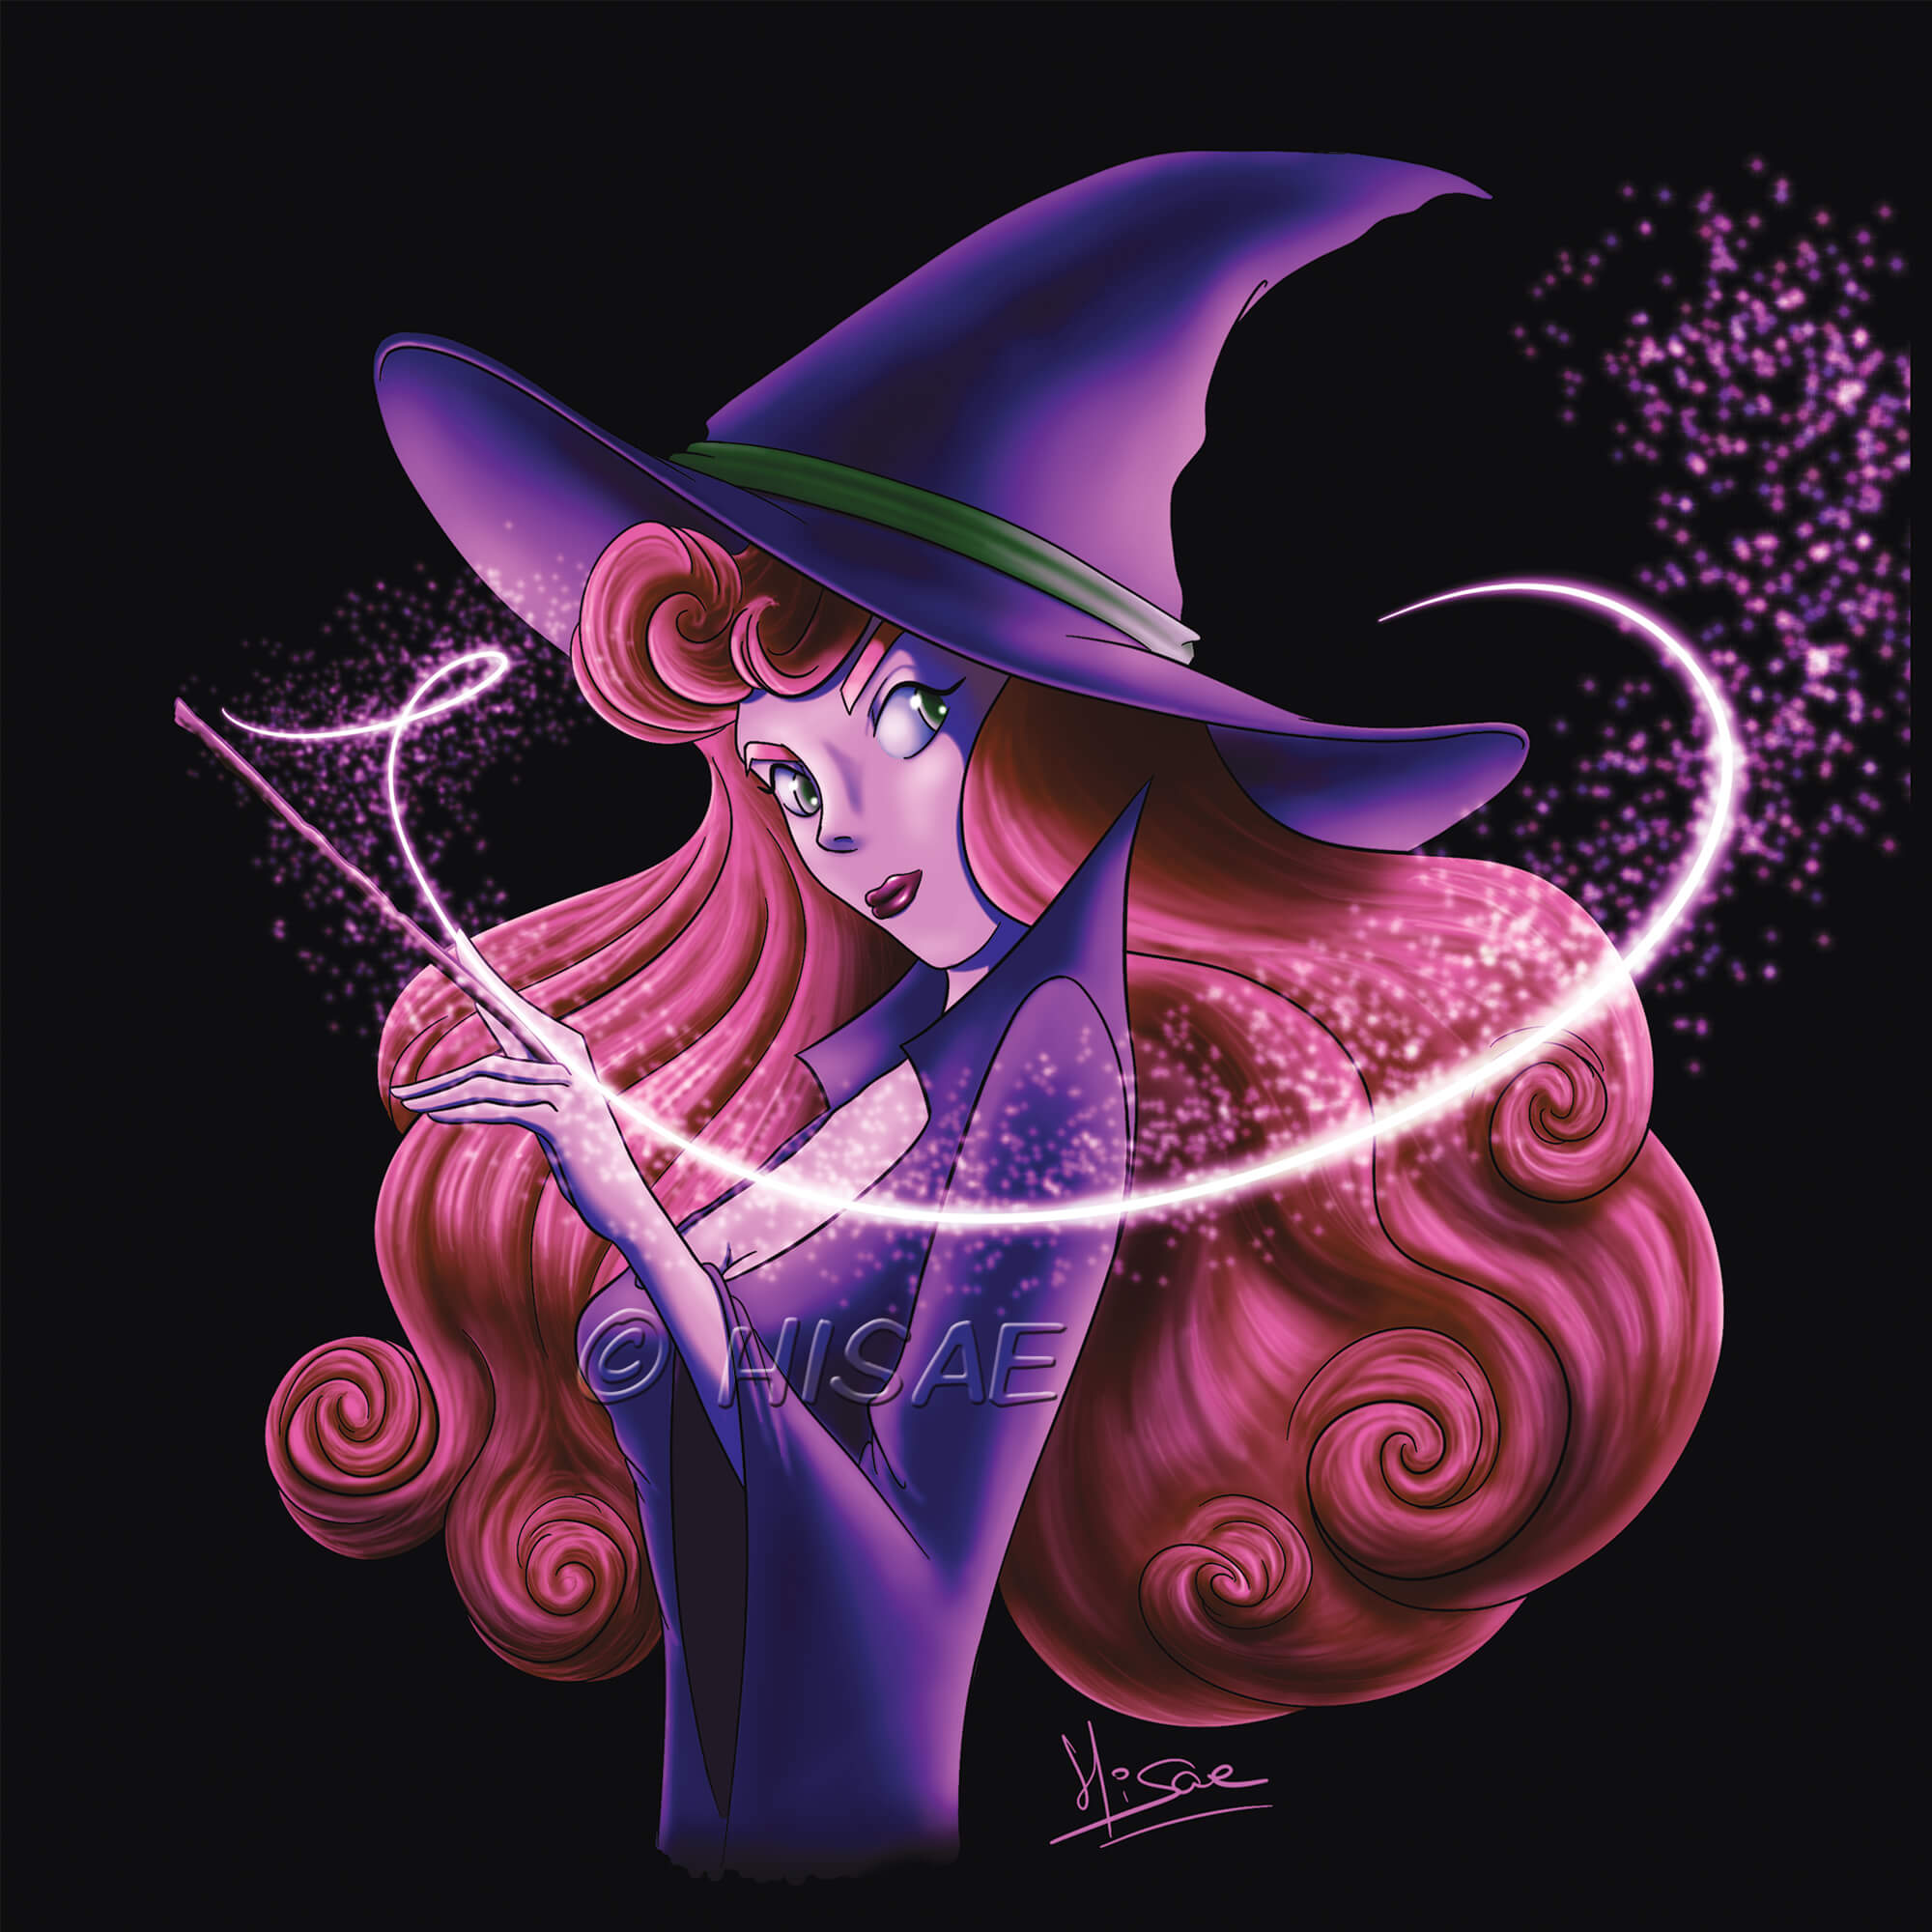 Dessin numérique représentant le portrait d'une sorcière, chapeau pointu sur la tête, qui fait un tour de magie ©Hisae illustrations